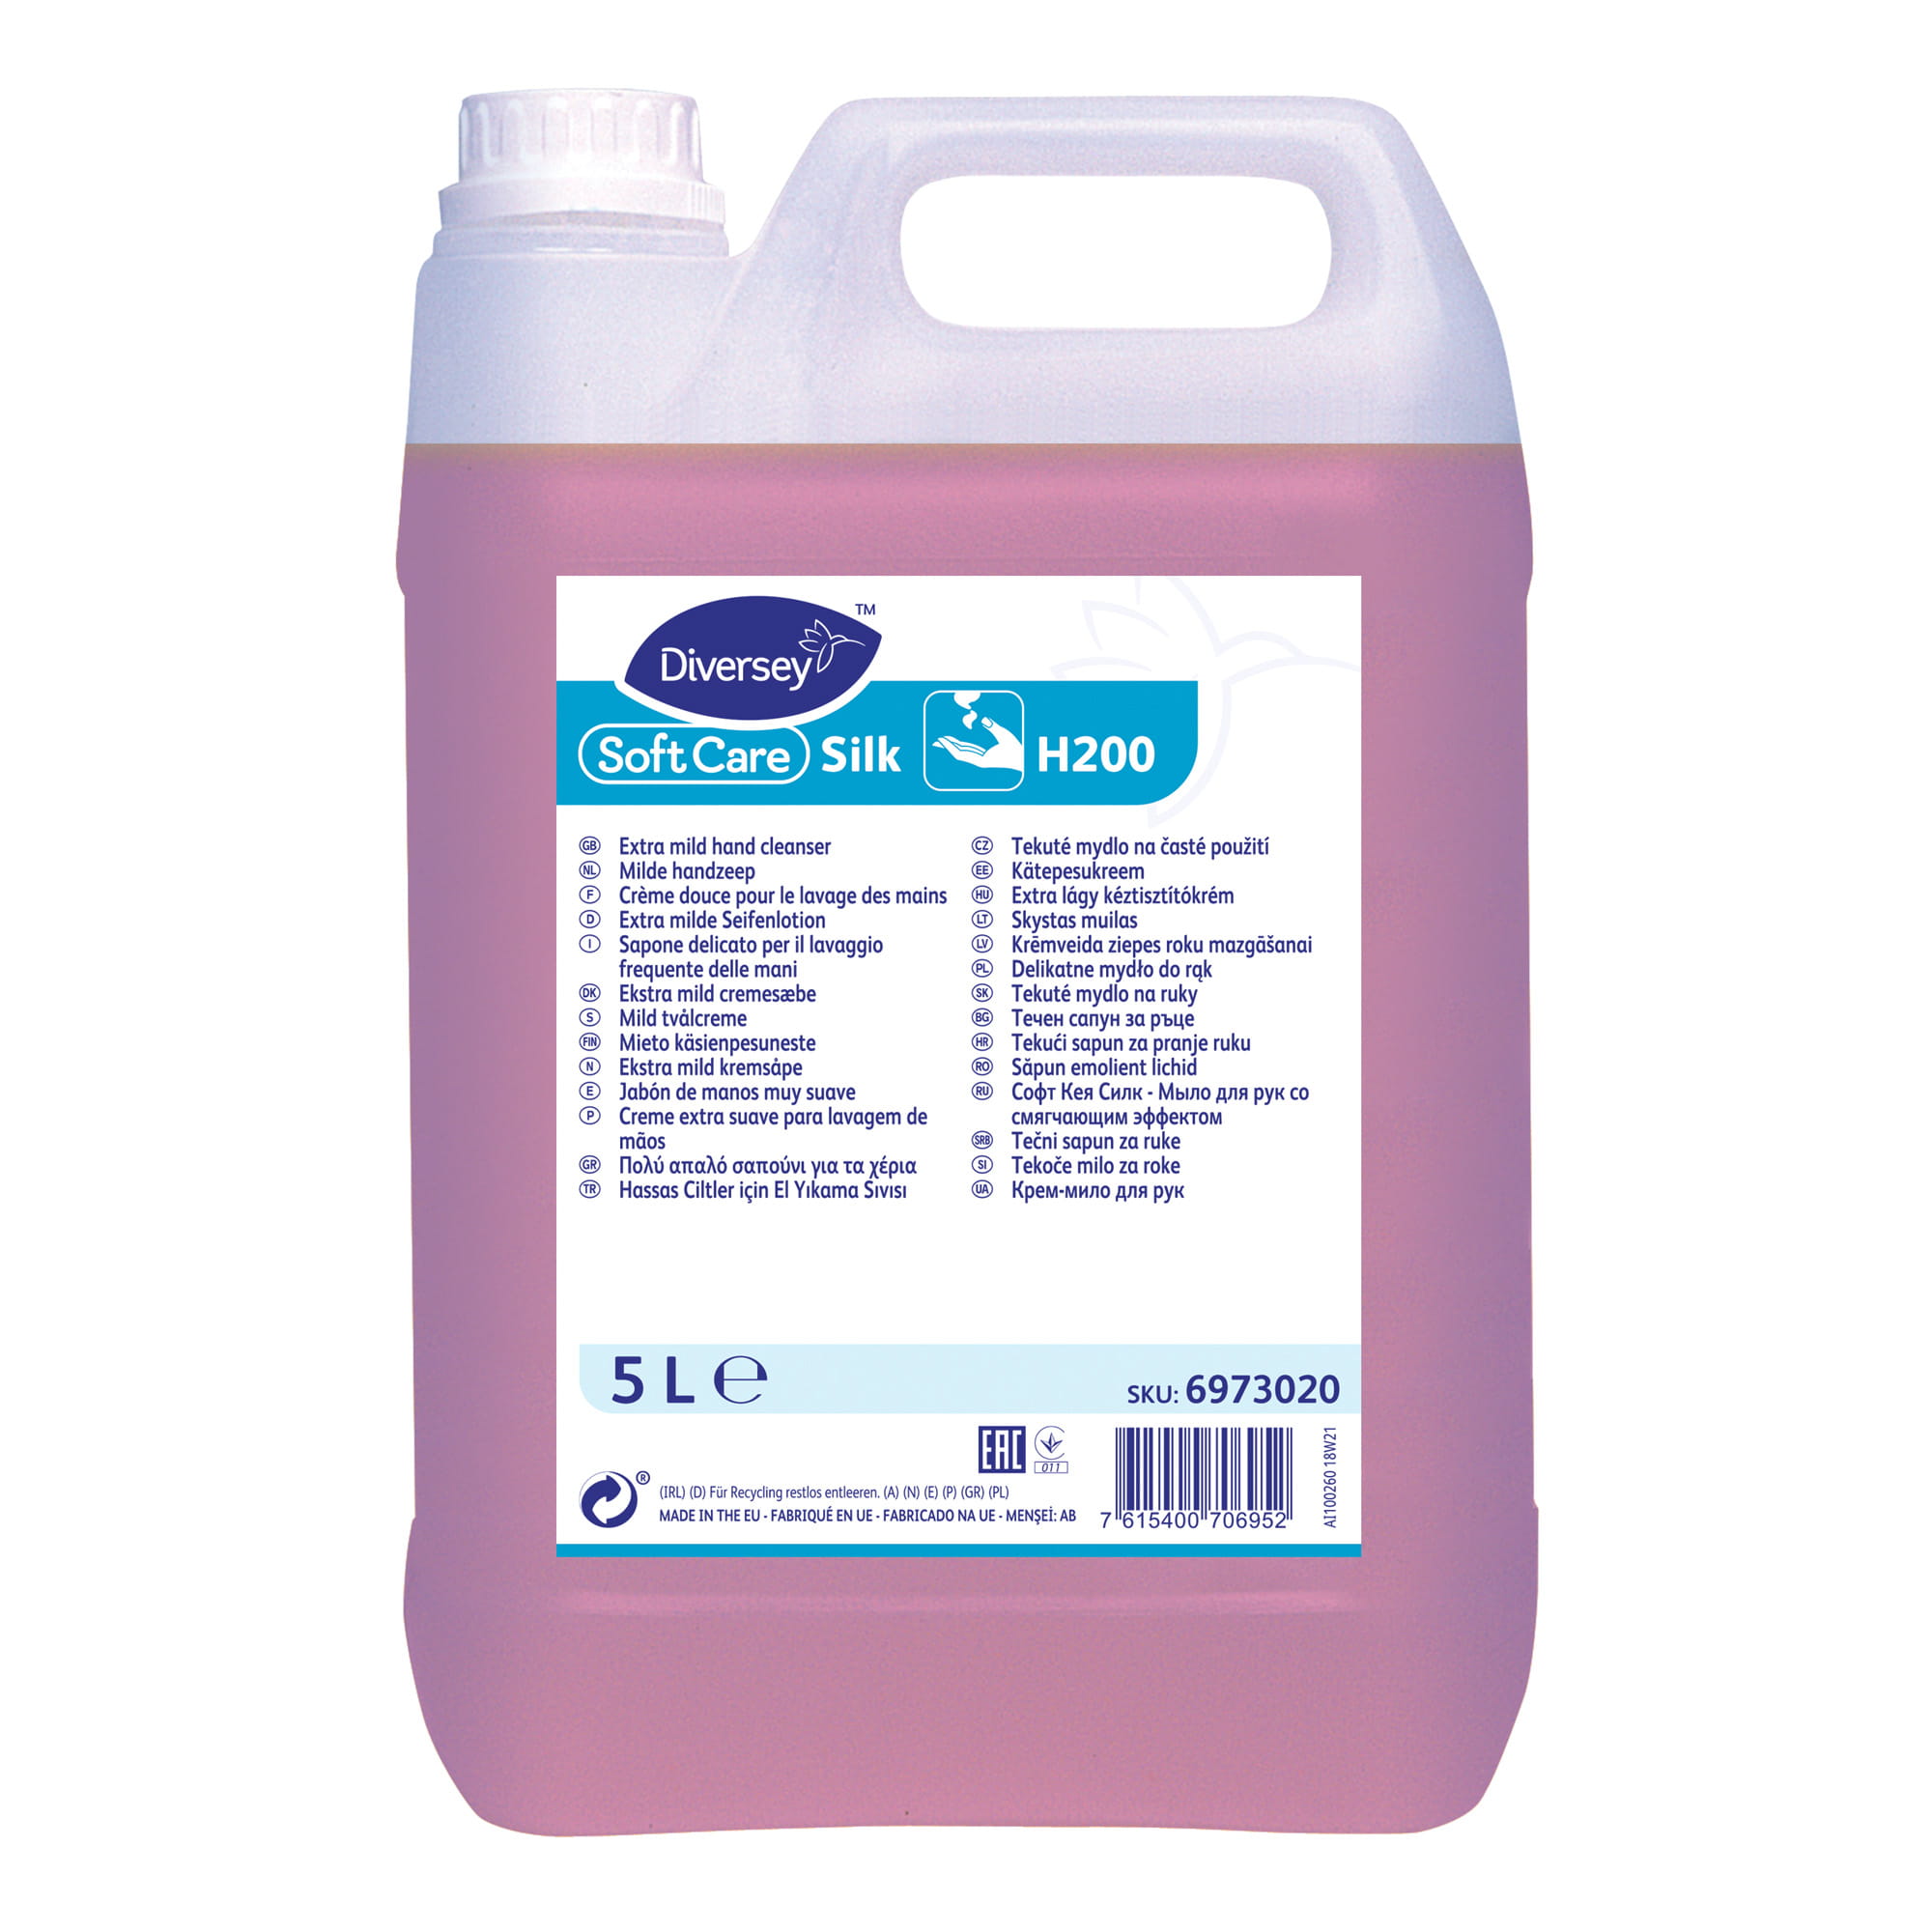 Soft Care Silk H200 milde Seifenlotion 5 Liter Kanister 6973020_1